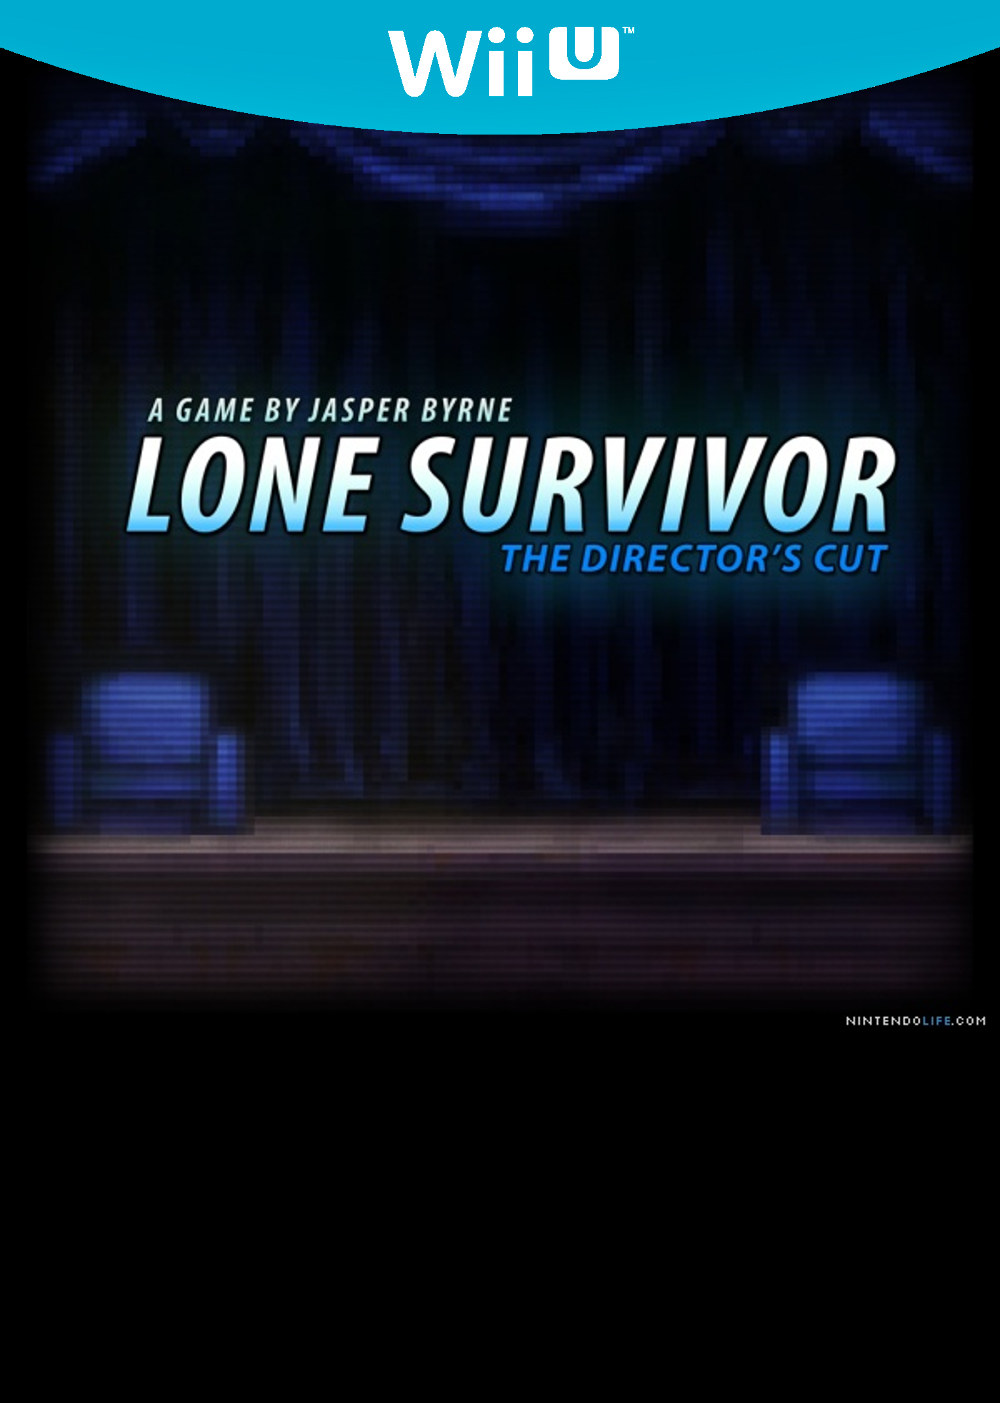 Lone Survivor Cover